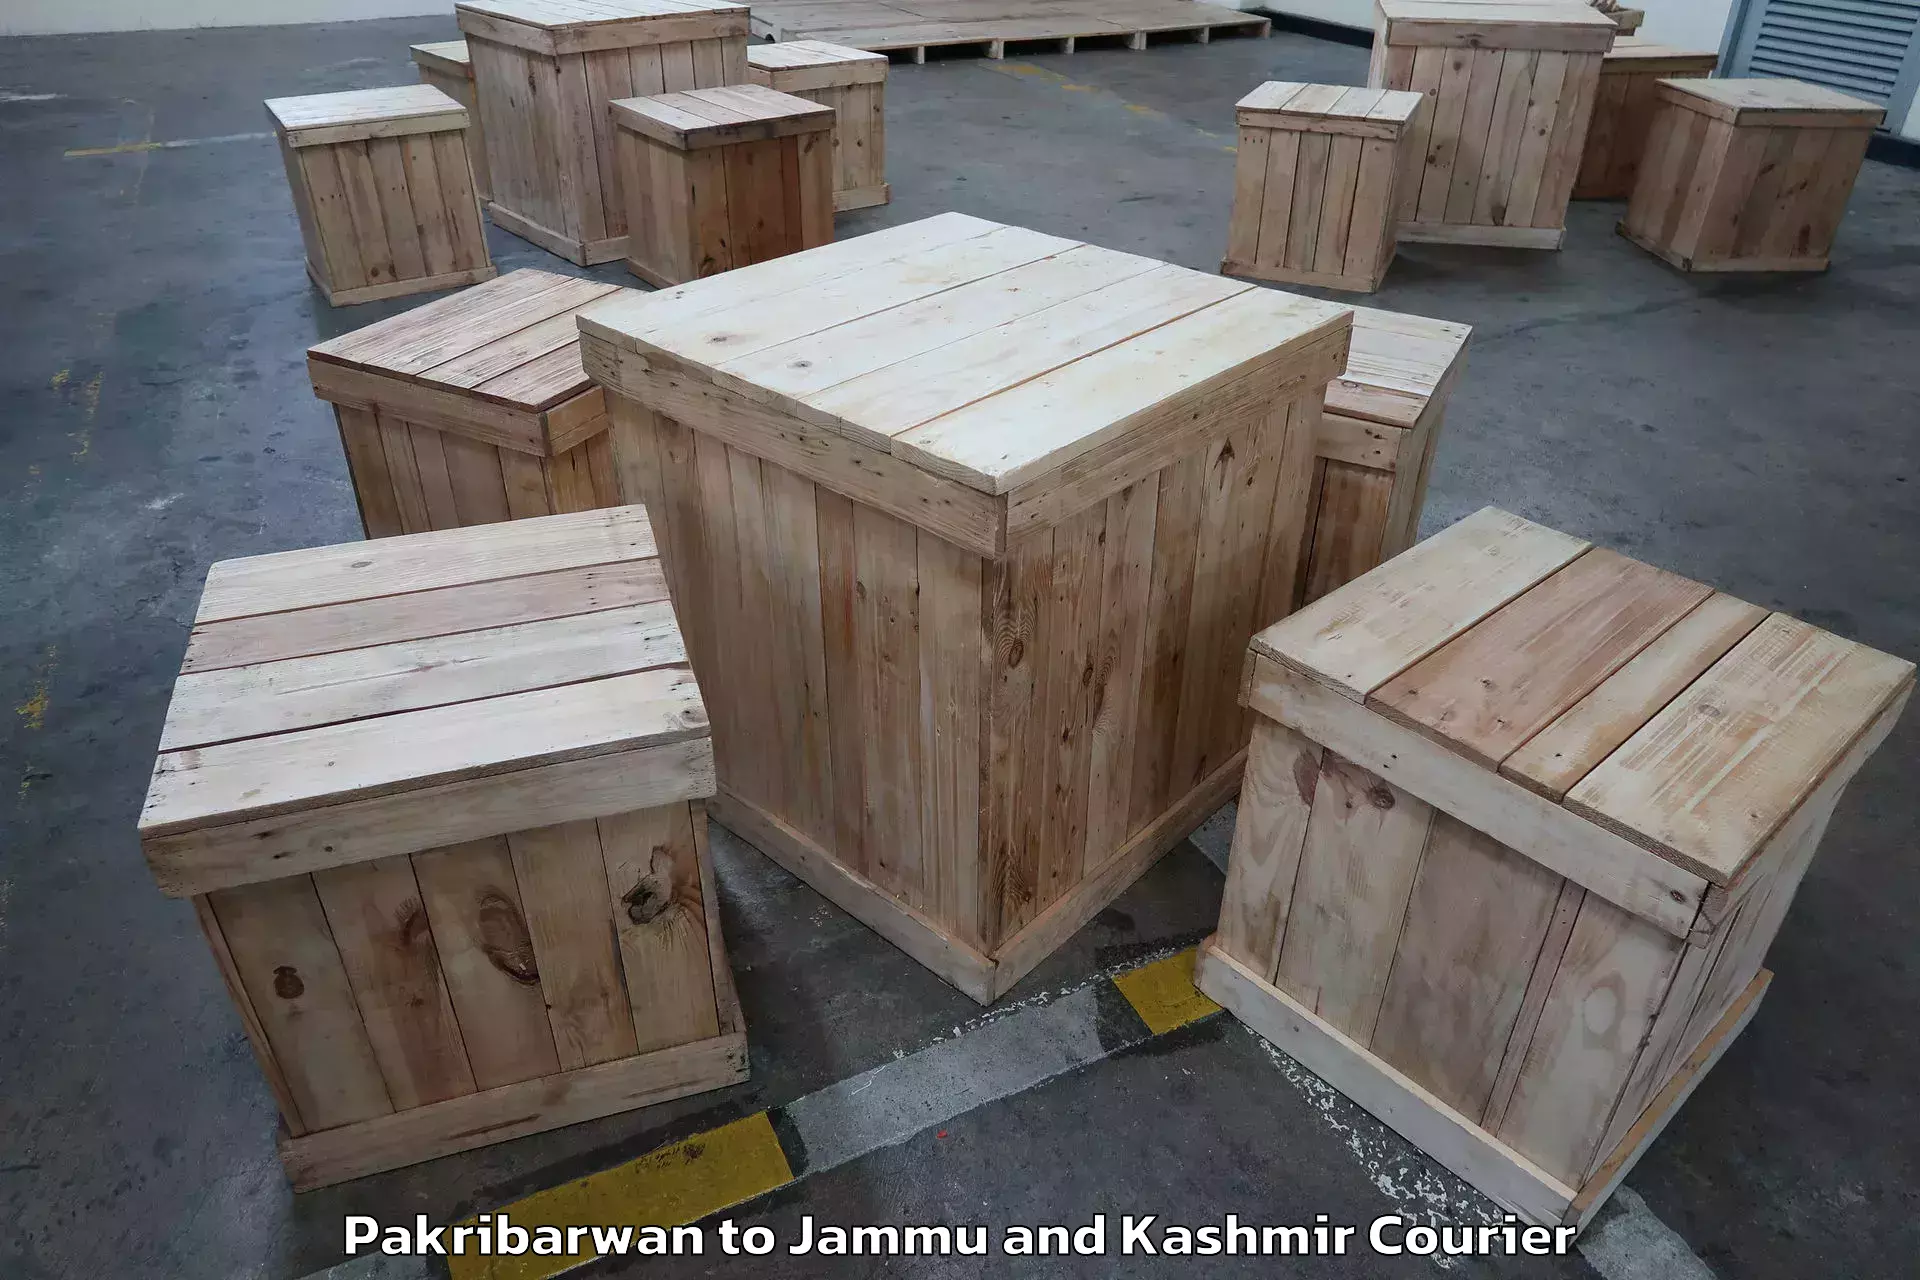 Furniture relocation experts Pakribarwan to Kargil